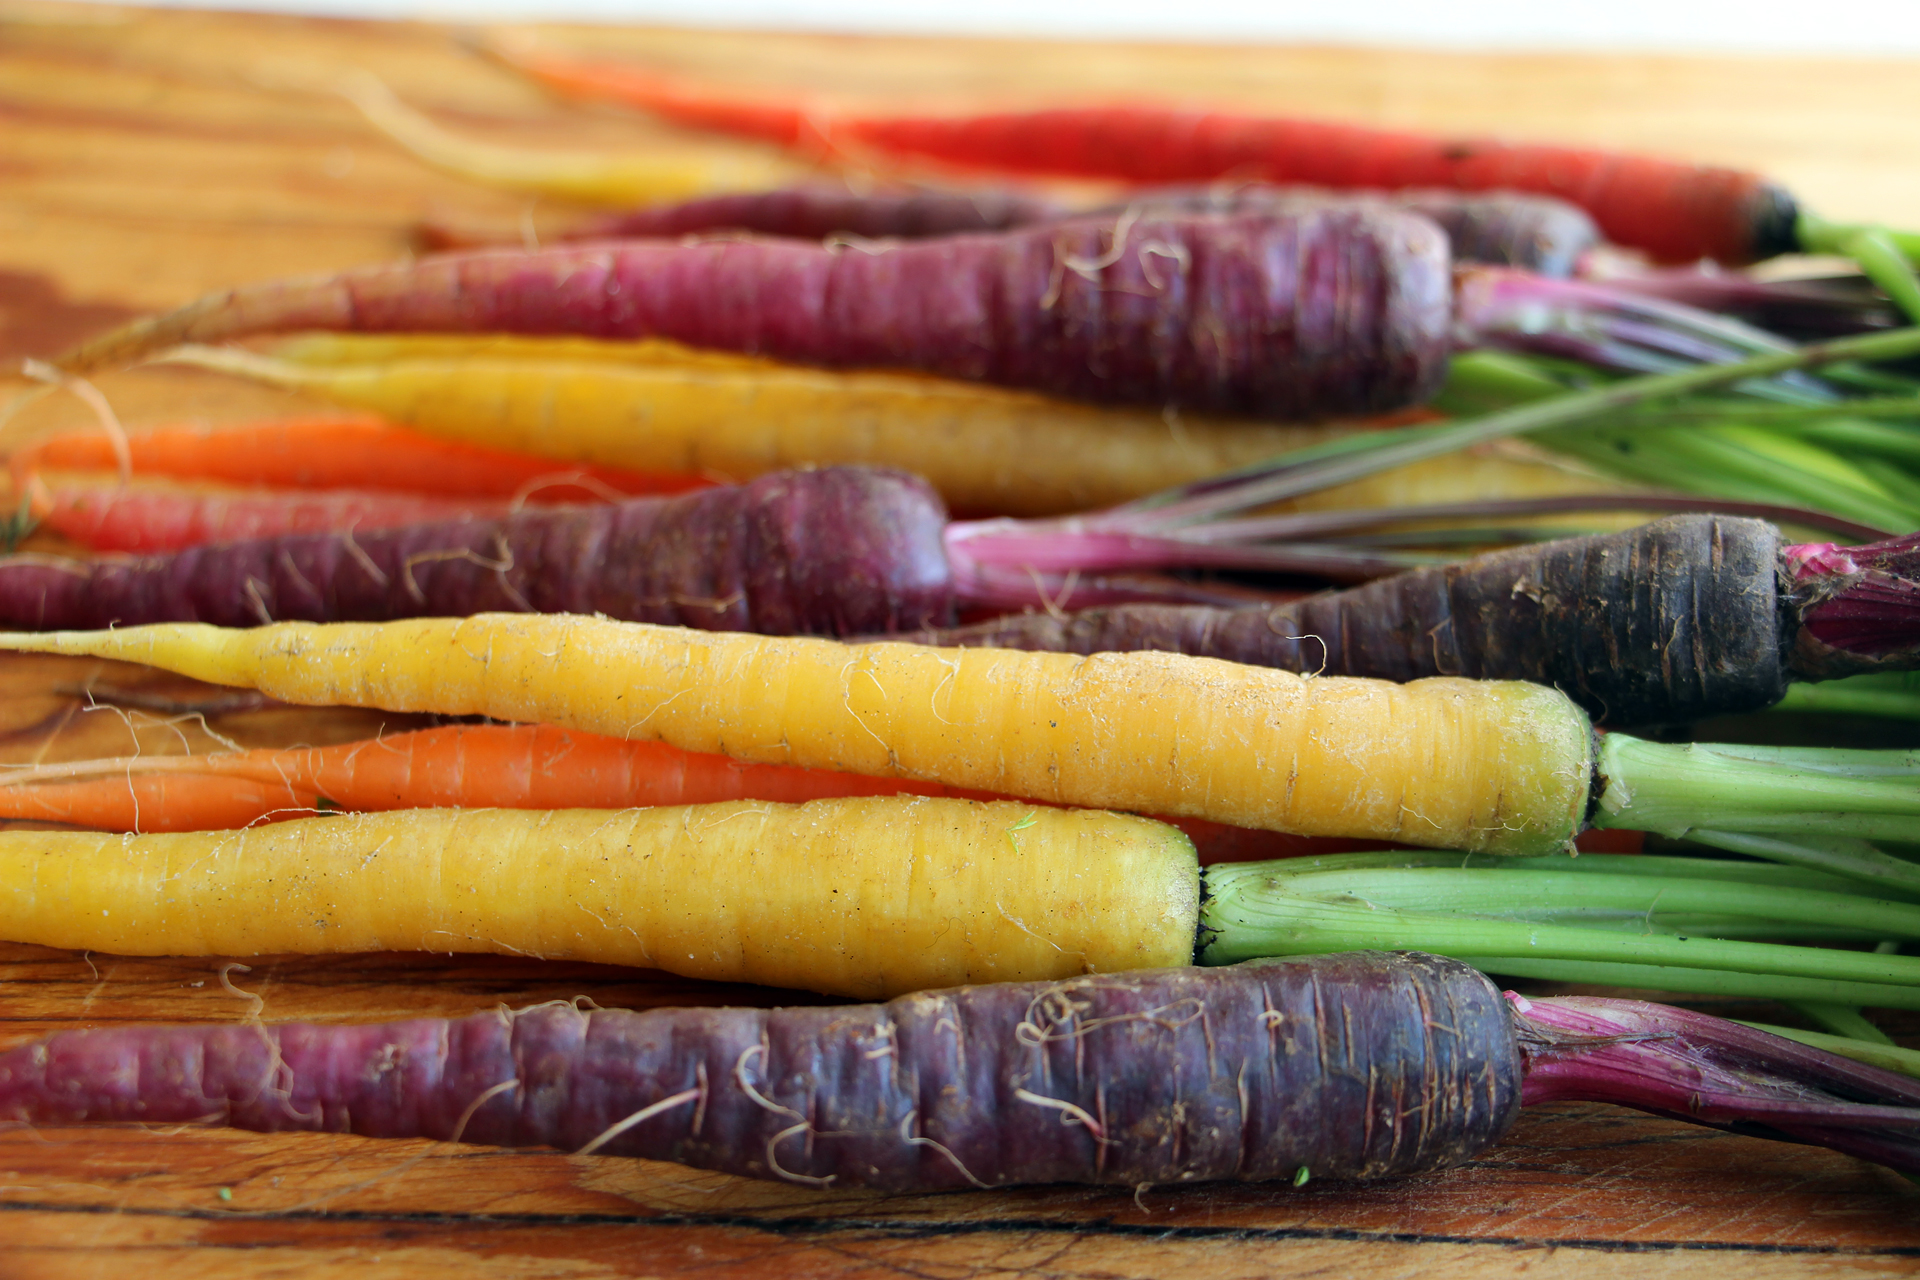 Rainbow baby carrots.